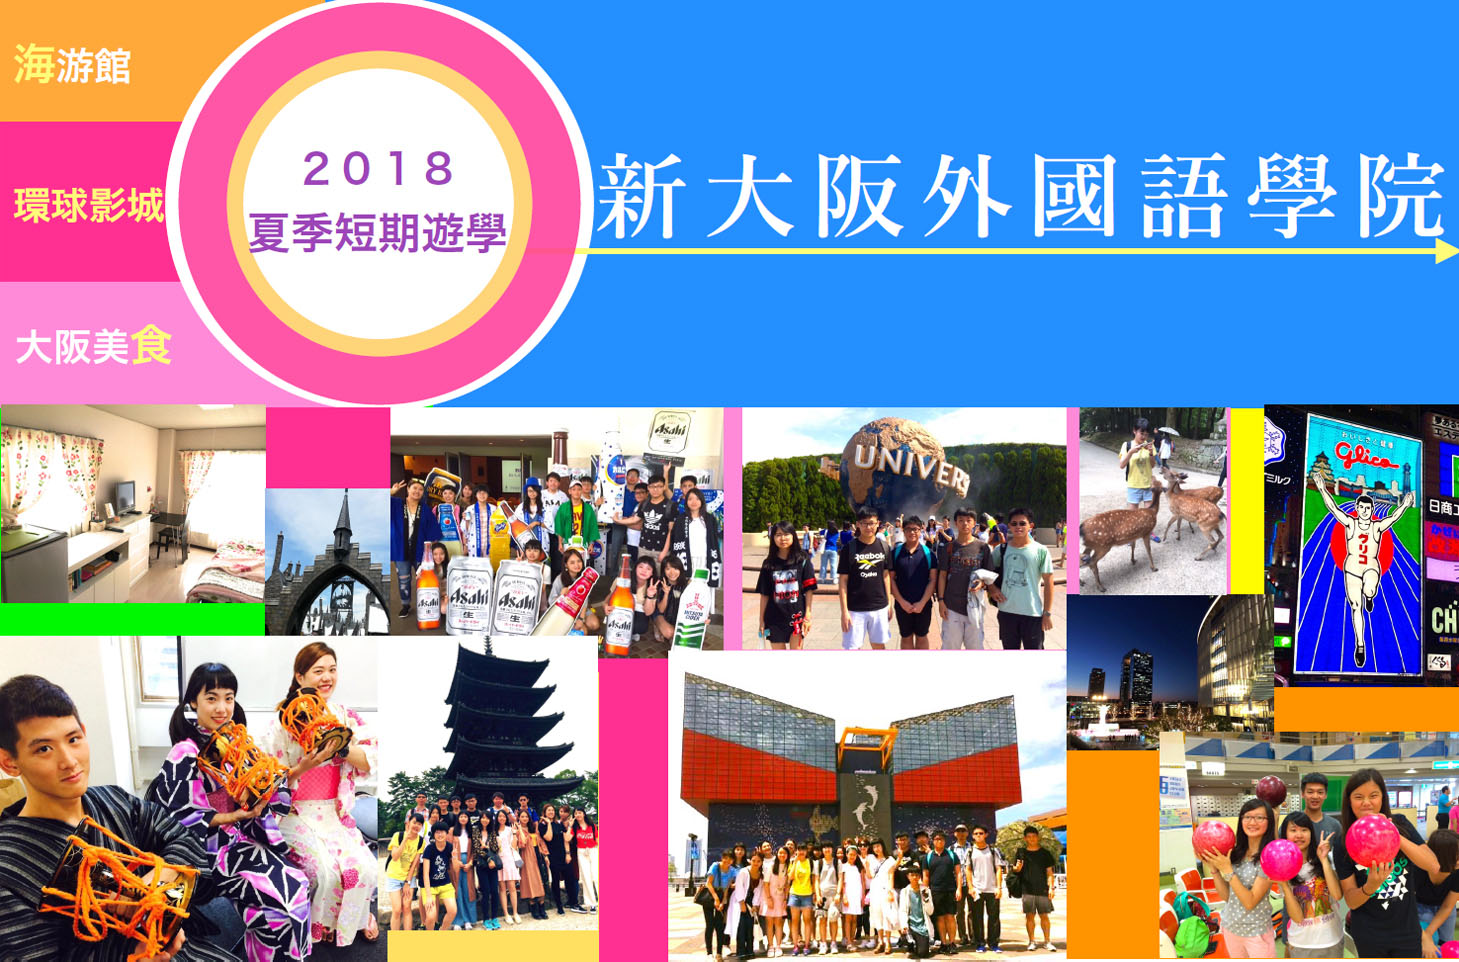 新大阪外國語學院 2018 夏季短期遊學